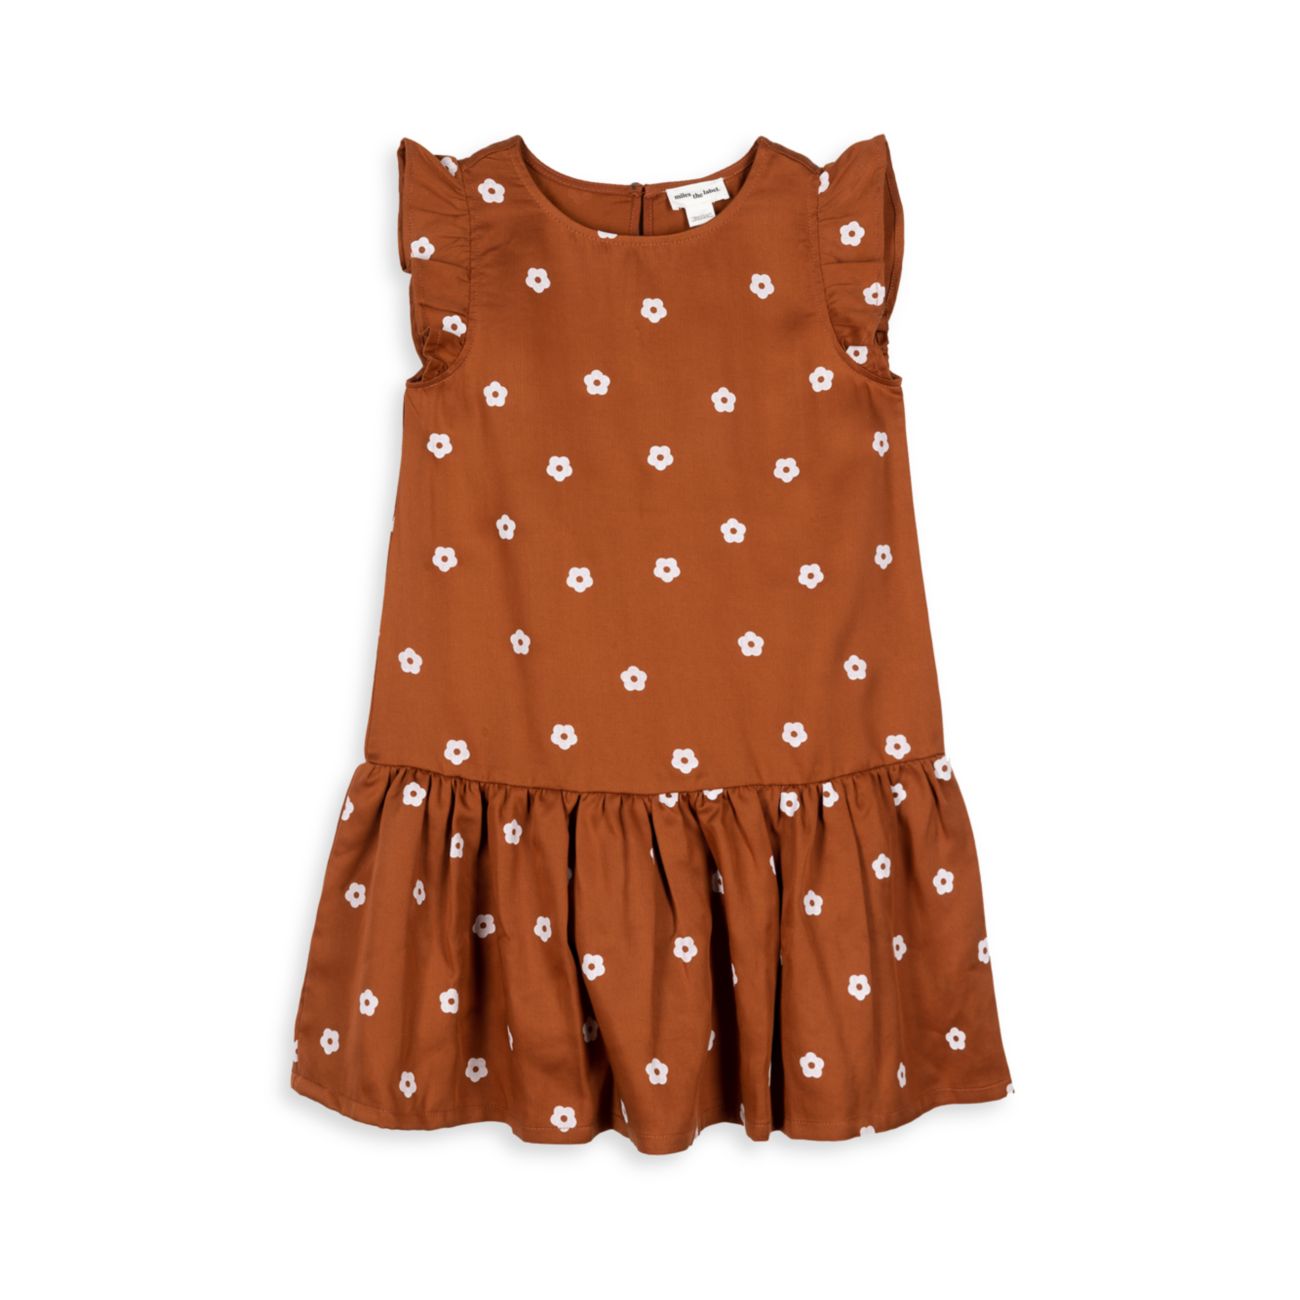 Тканое платье с принтом маргариток для маленькой девочки с рукавами развевающимися Miles the Label